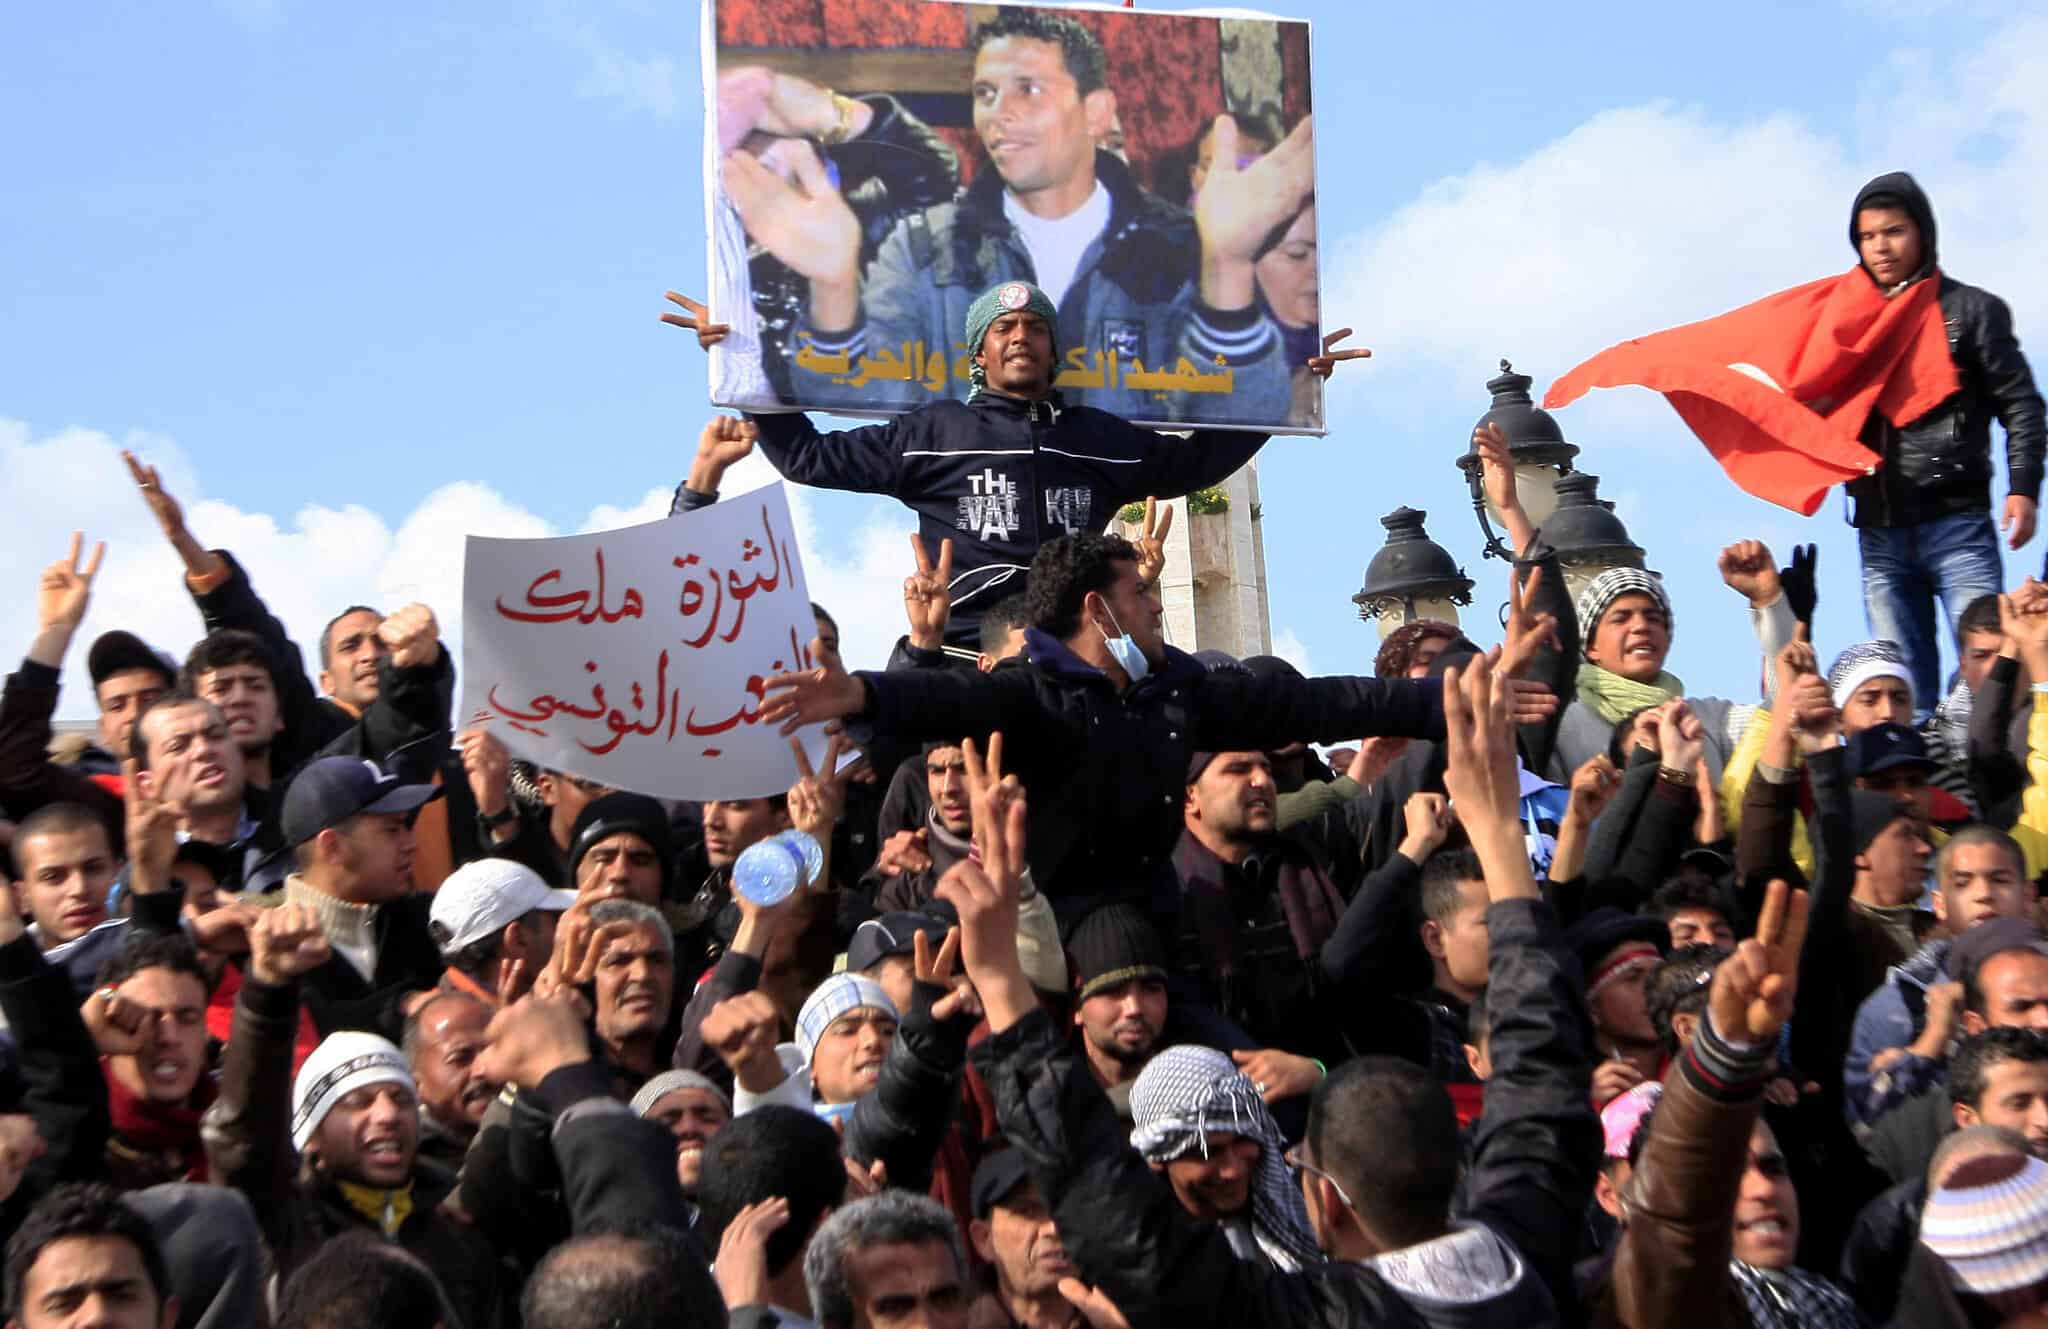 מפגינים בתוניסיה נושאים שלט ובו תמונה של מוחמד בועזיזי, שהצית את עצמו (צילום: AP Photo/Salah Habibi)